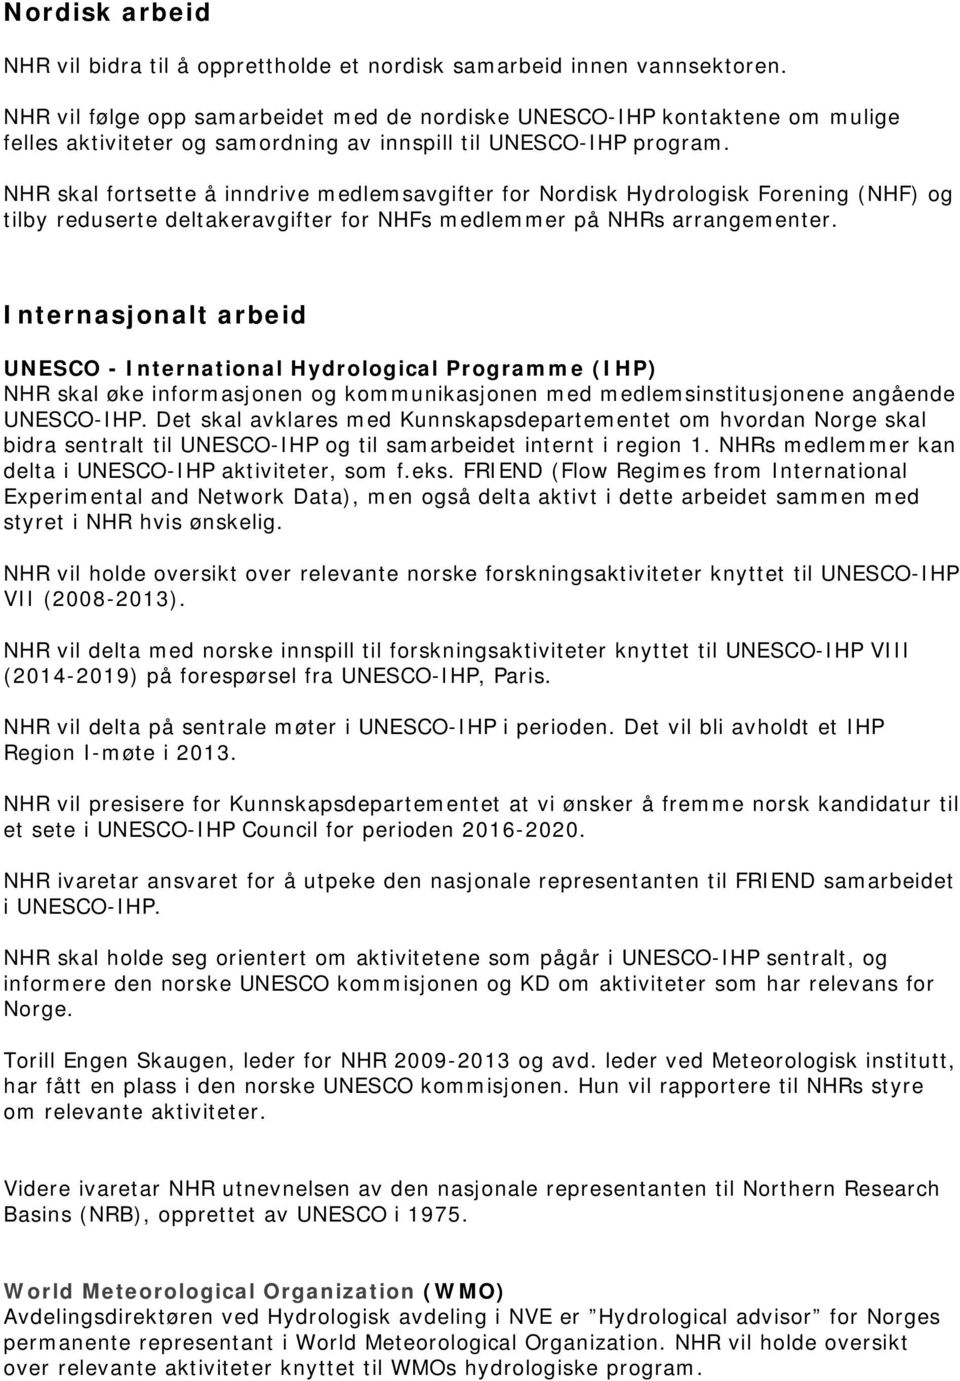 NHR skal fortsette å inndrive medlemsavgifter for Nordisk Hydrologisk Forening (NHF) og tilby reduserte deltakeravgifter for NHFs medlemmer på NHRs arrangementer.